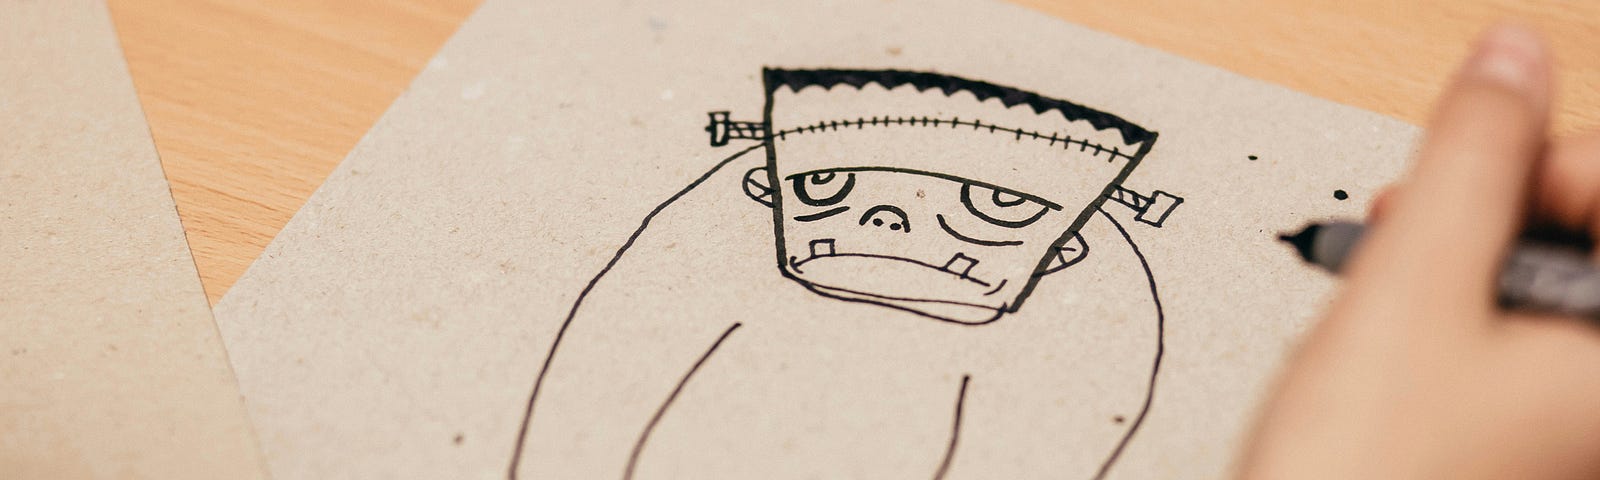 Frankenstein on paper.